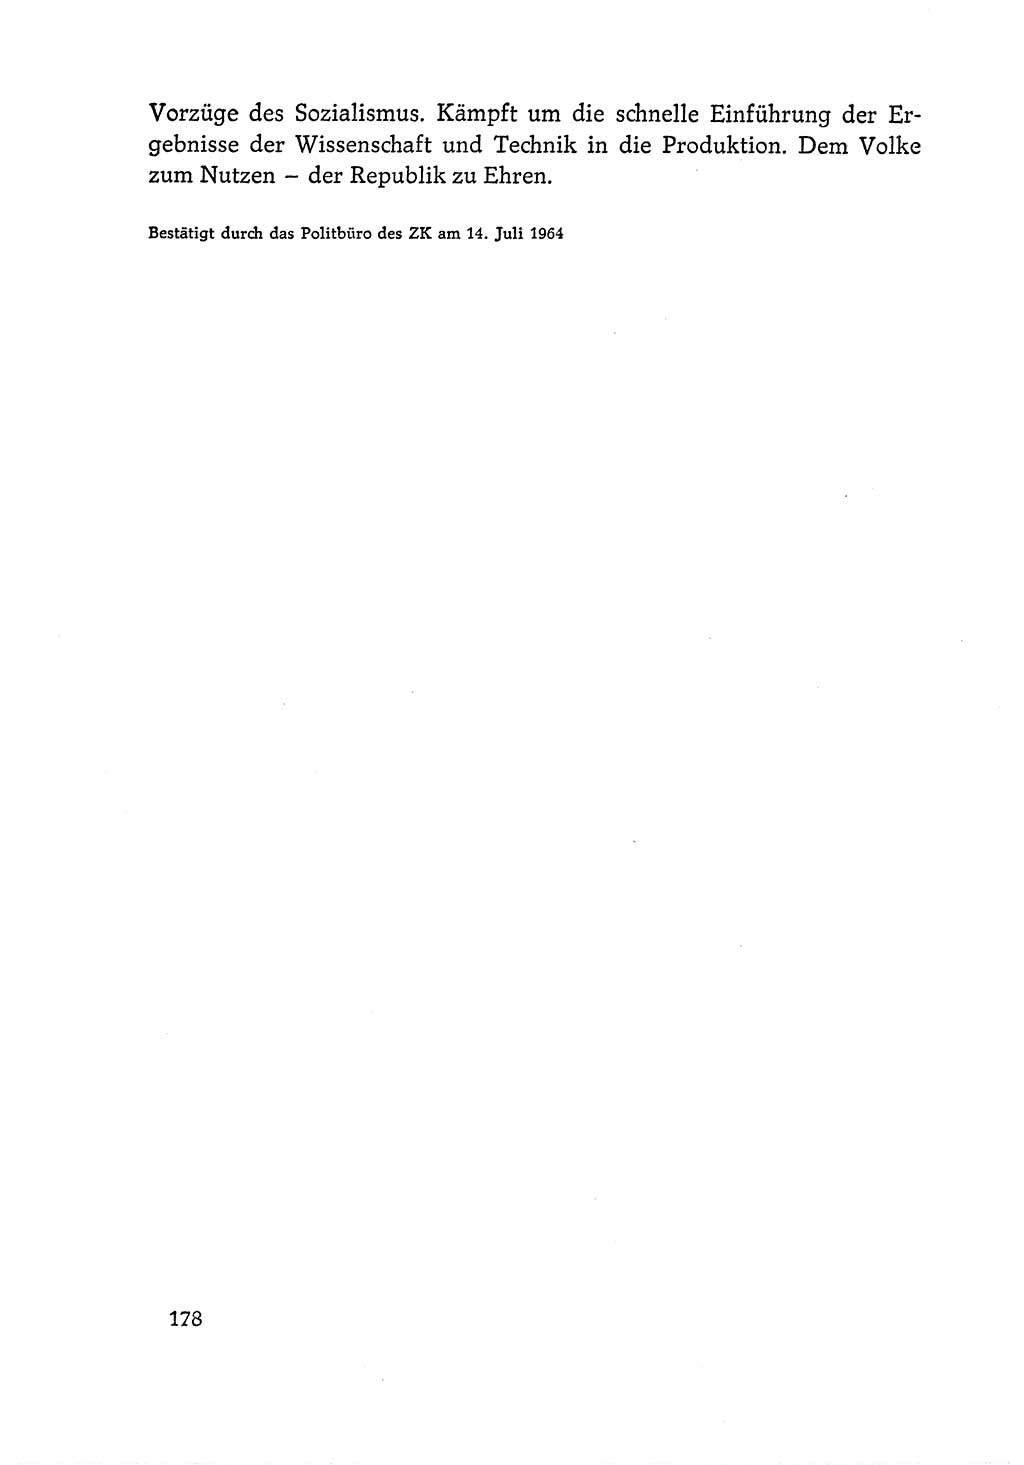 Dokumente der Sozialistischen Einheitspartei Deutschlands (SED) [Deutsche Demokratische Republik (DDR)] 1964-1965, Seite 178 (Dok. SED DDR 1964-1965, S. 178)